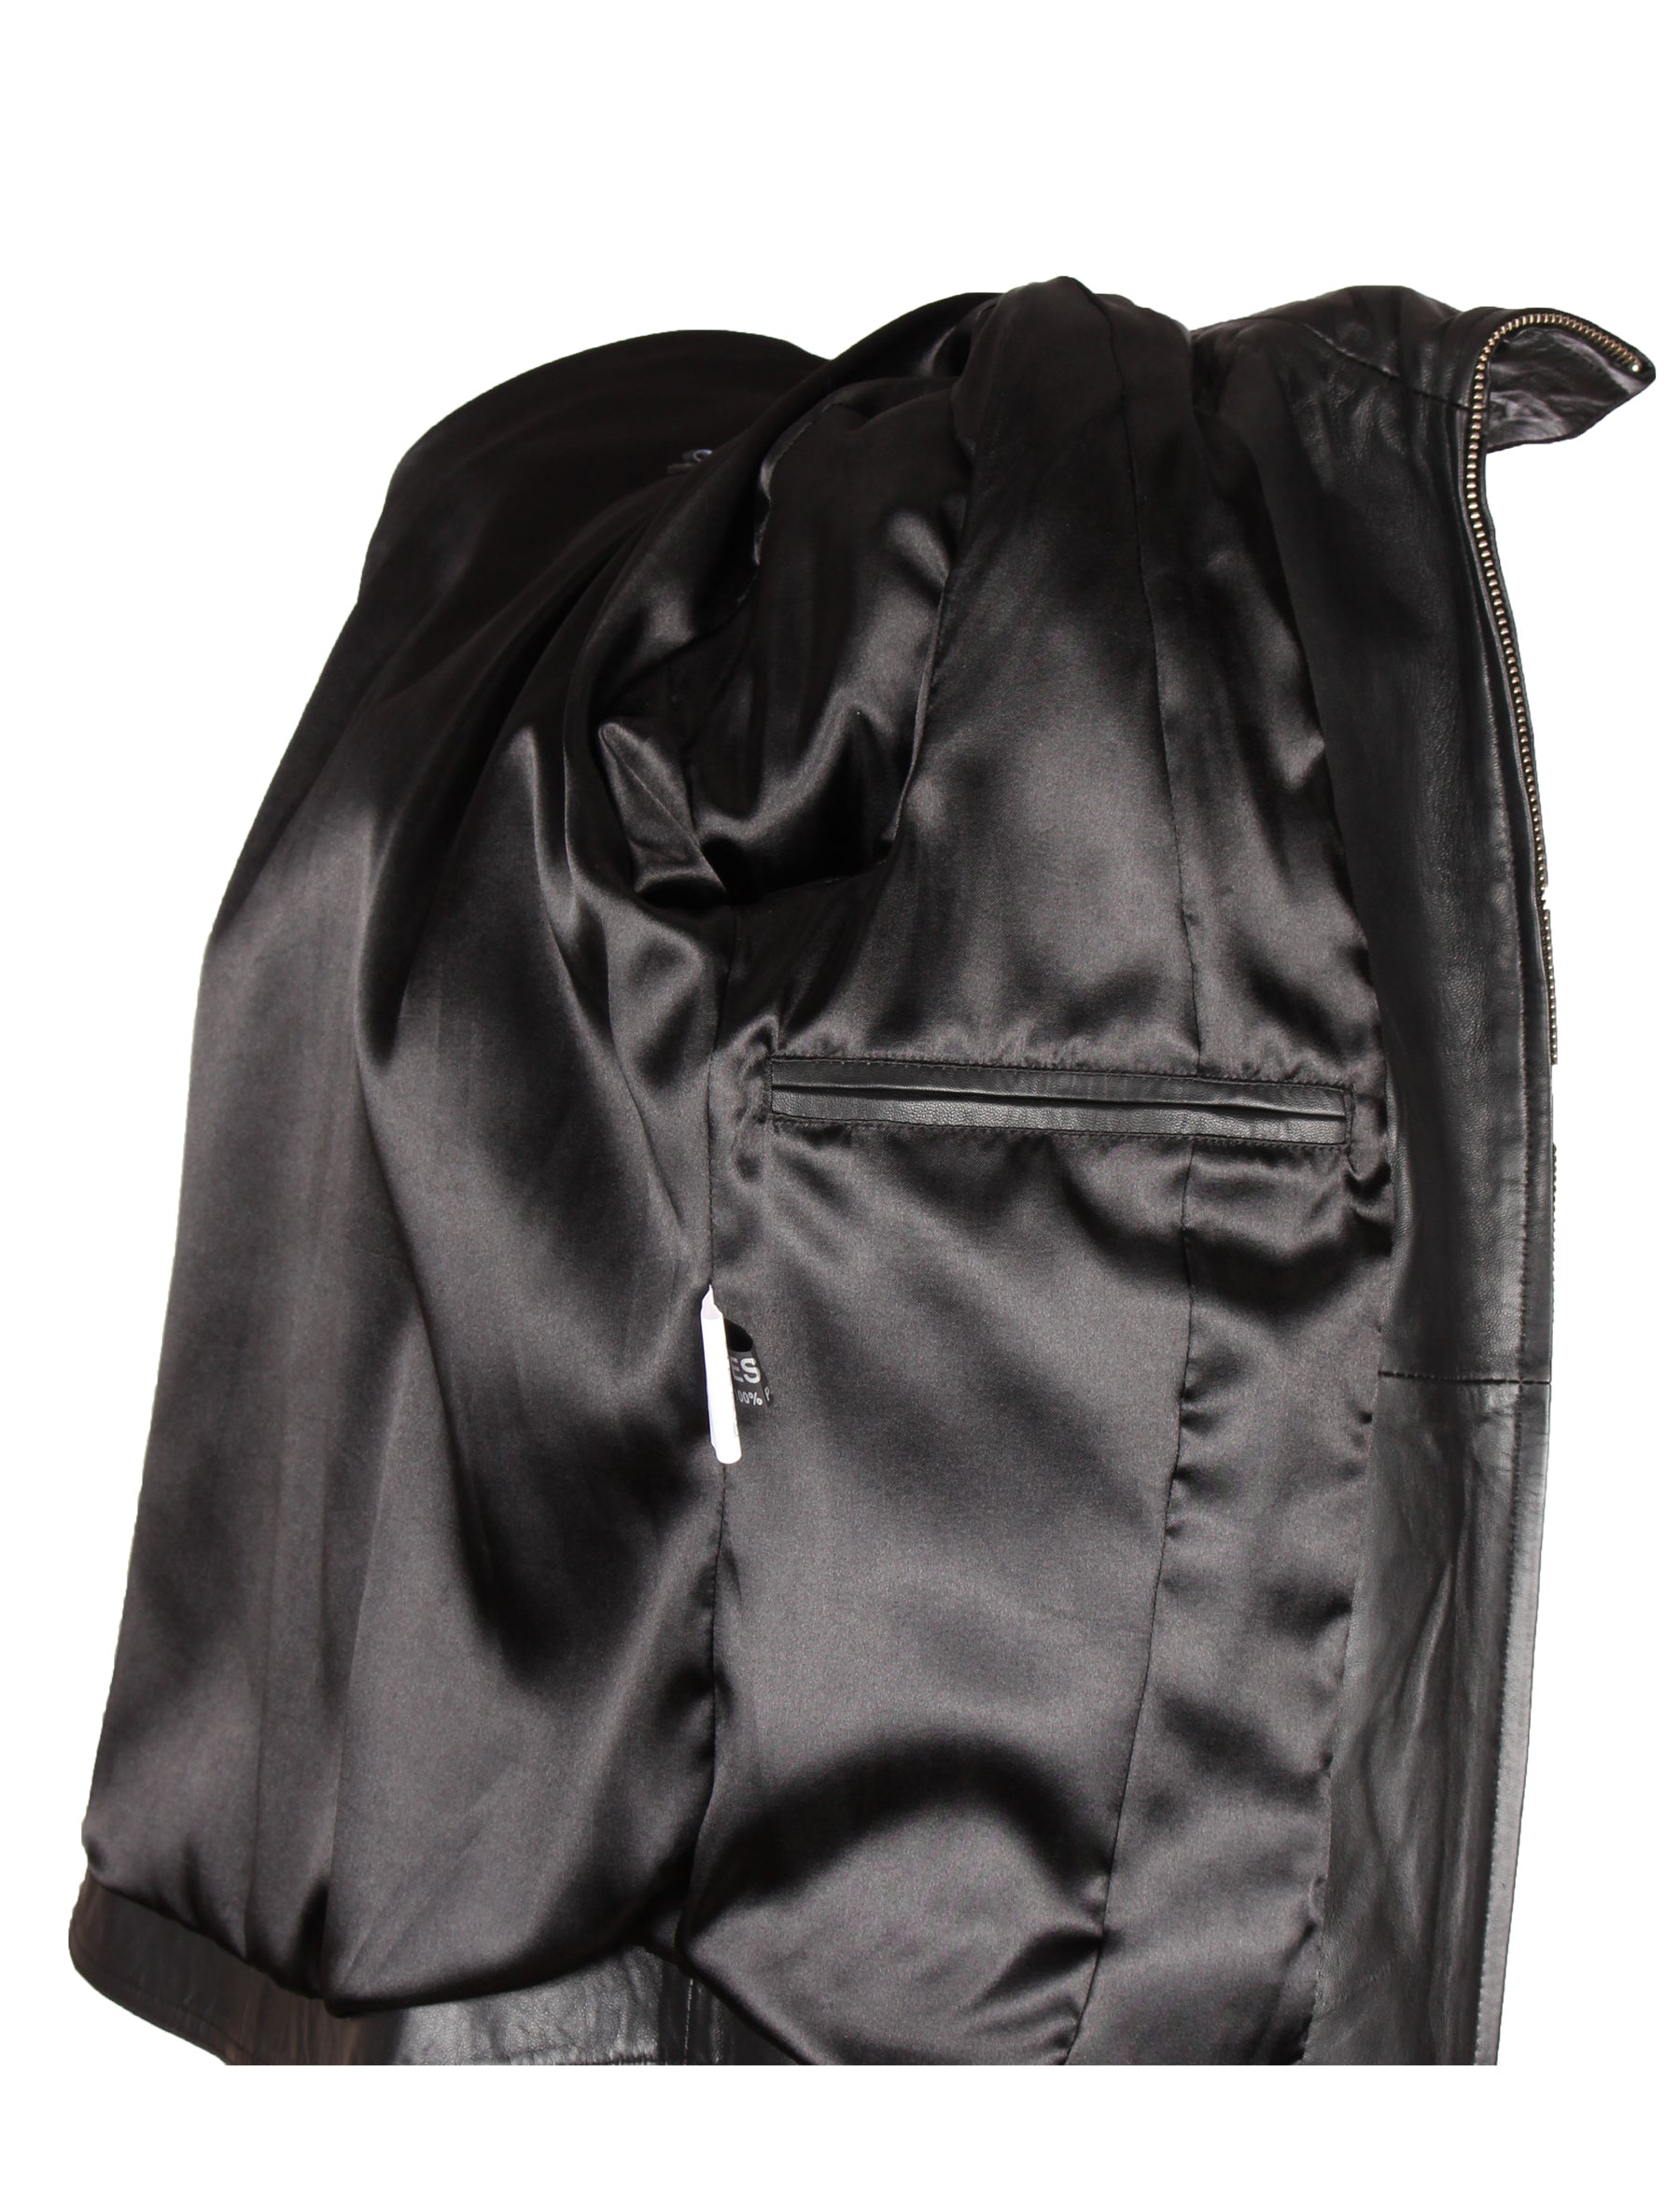 Damen Lederjacke 4873 aus Lammleder von Patago in schwarz